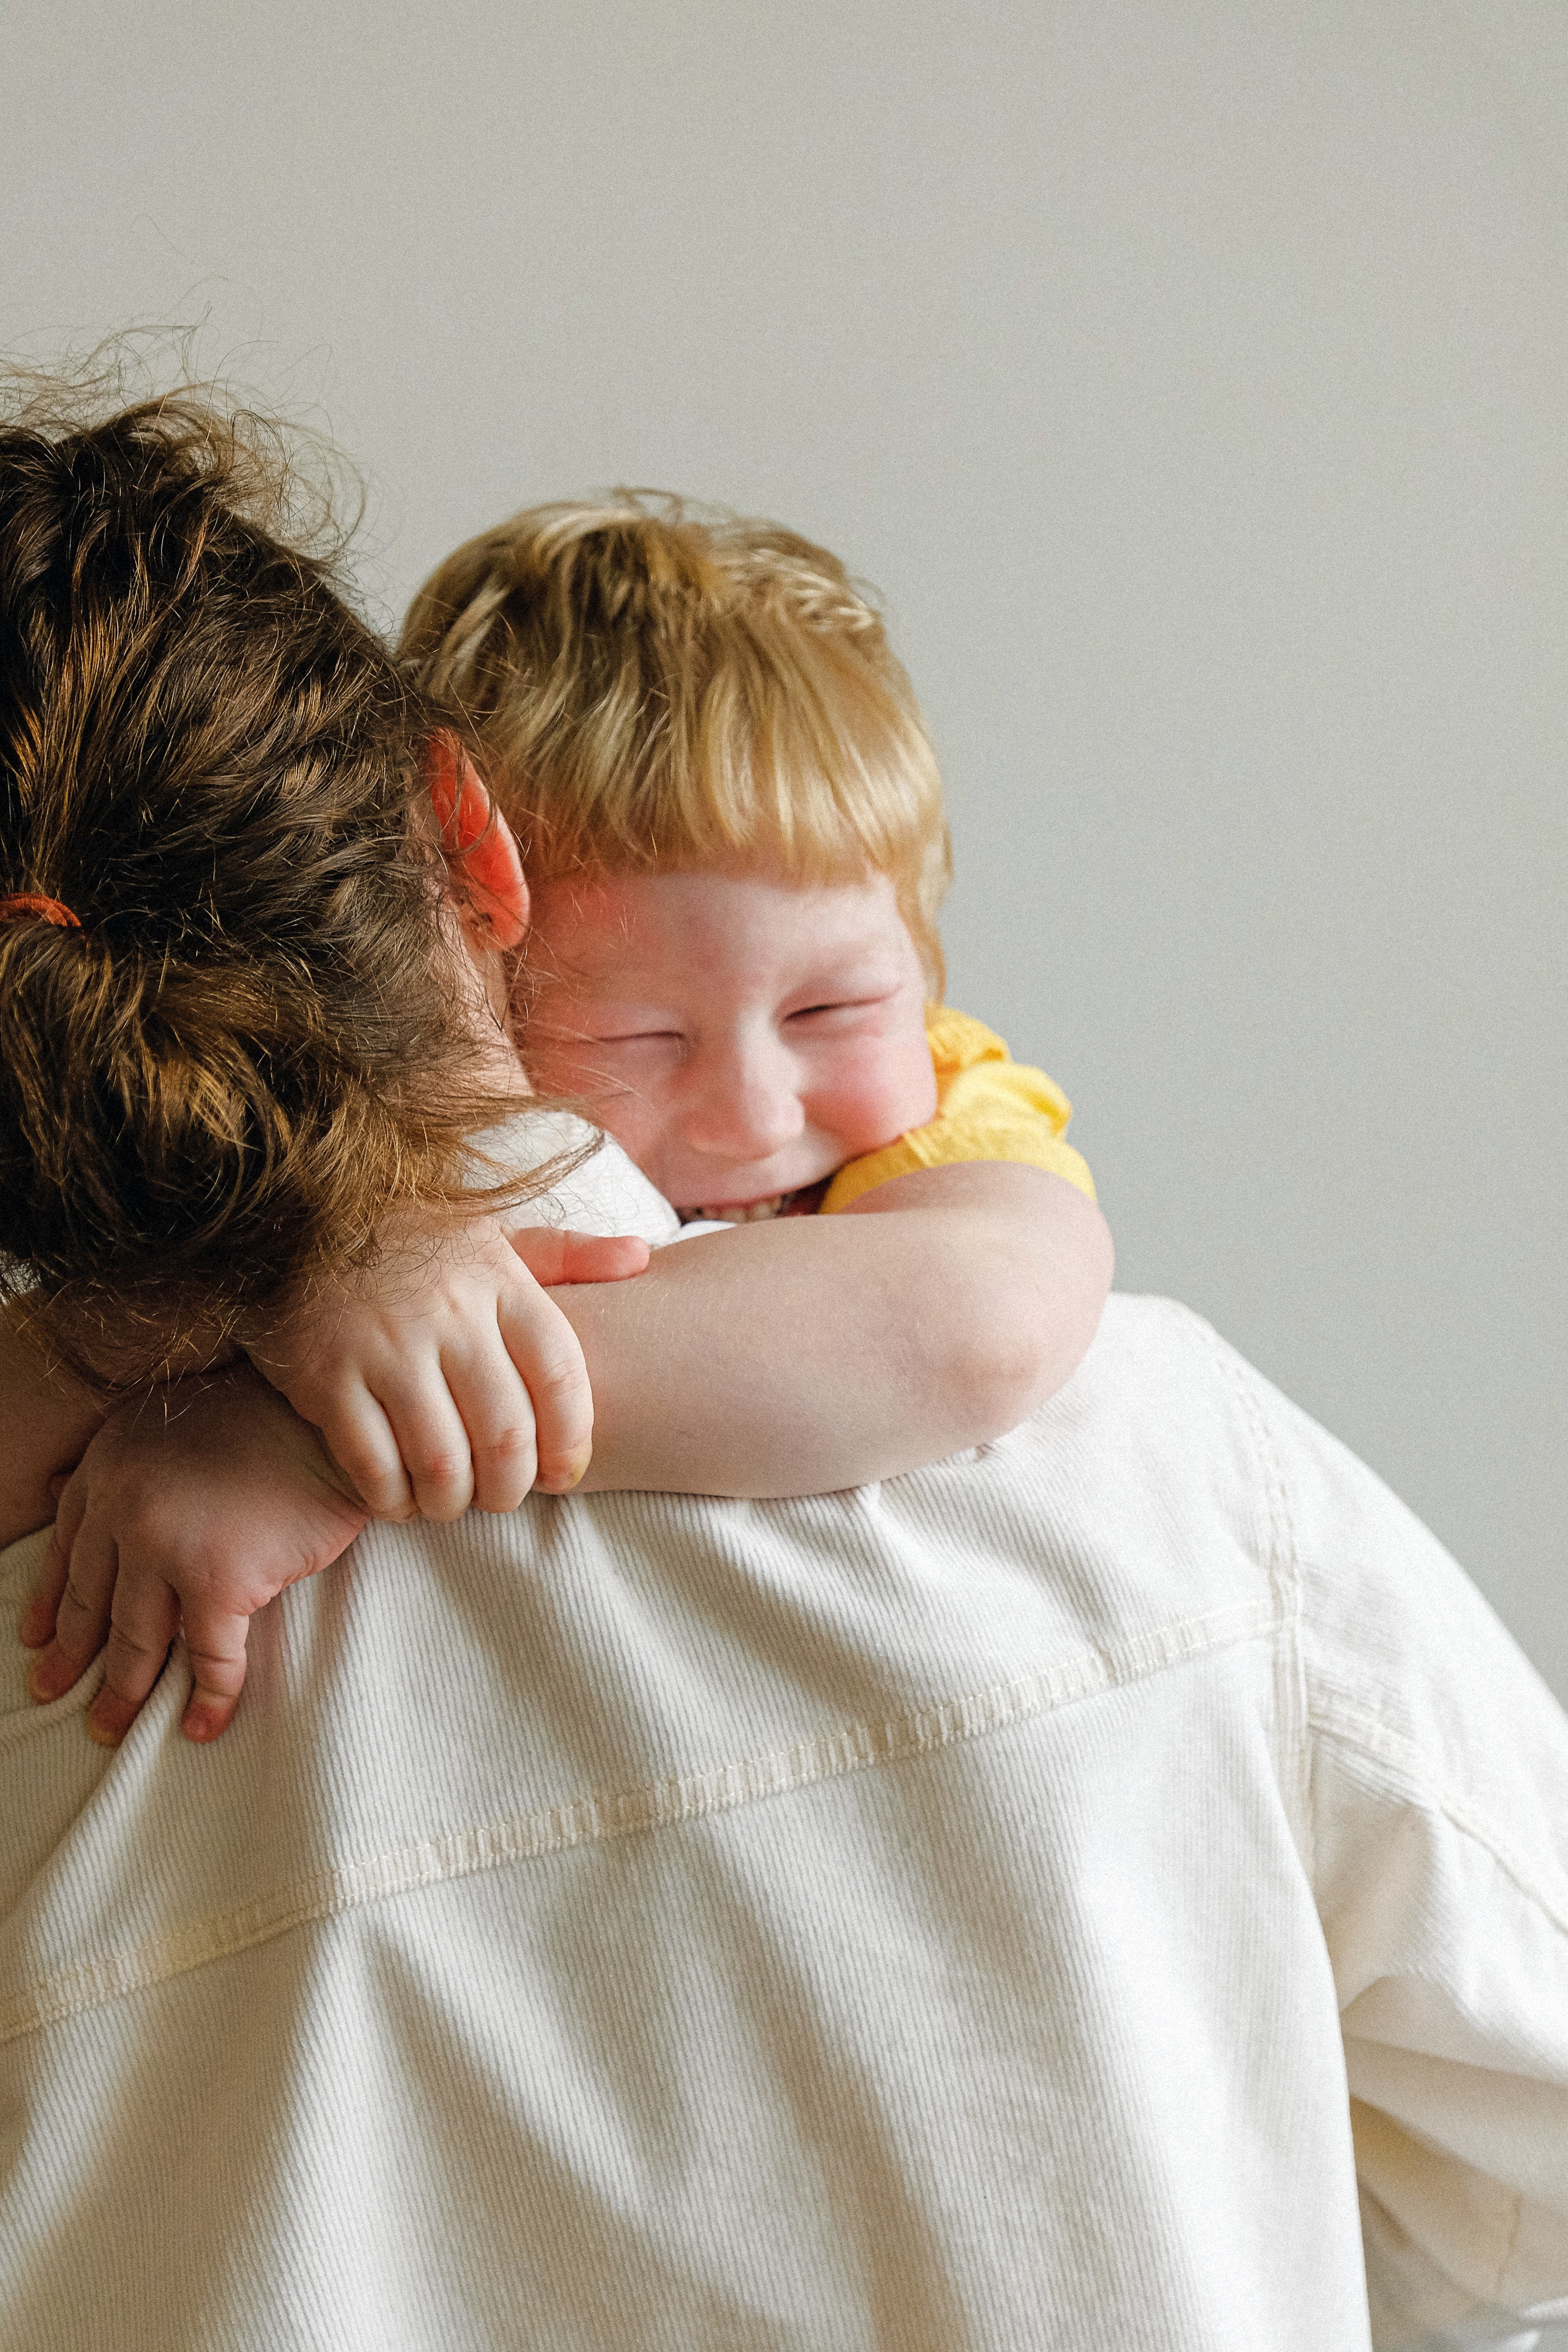 Frau umarmt einen Jungen | Quelle: Pexels